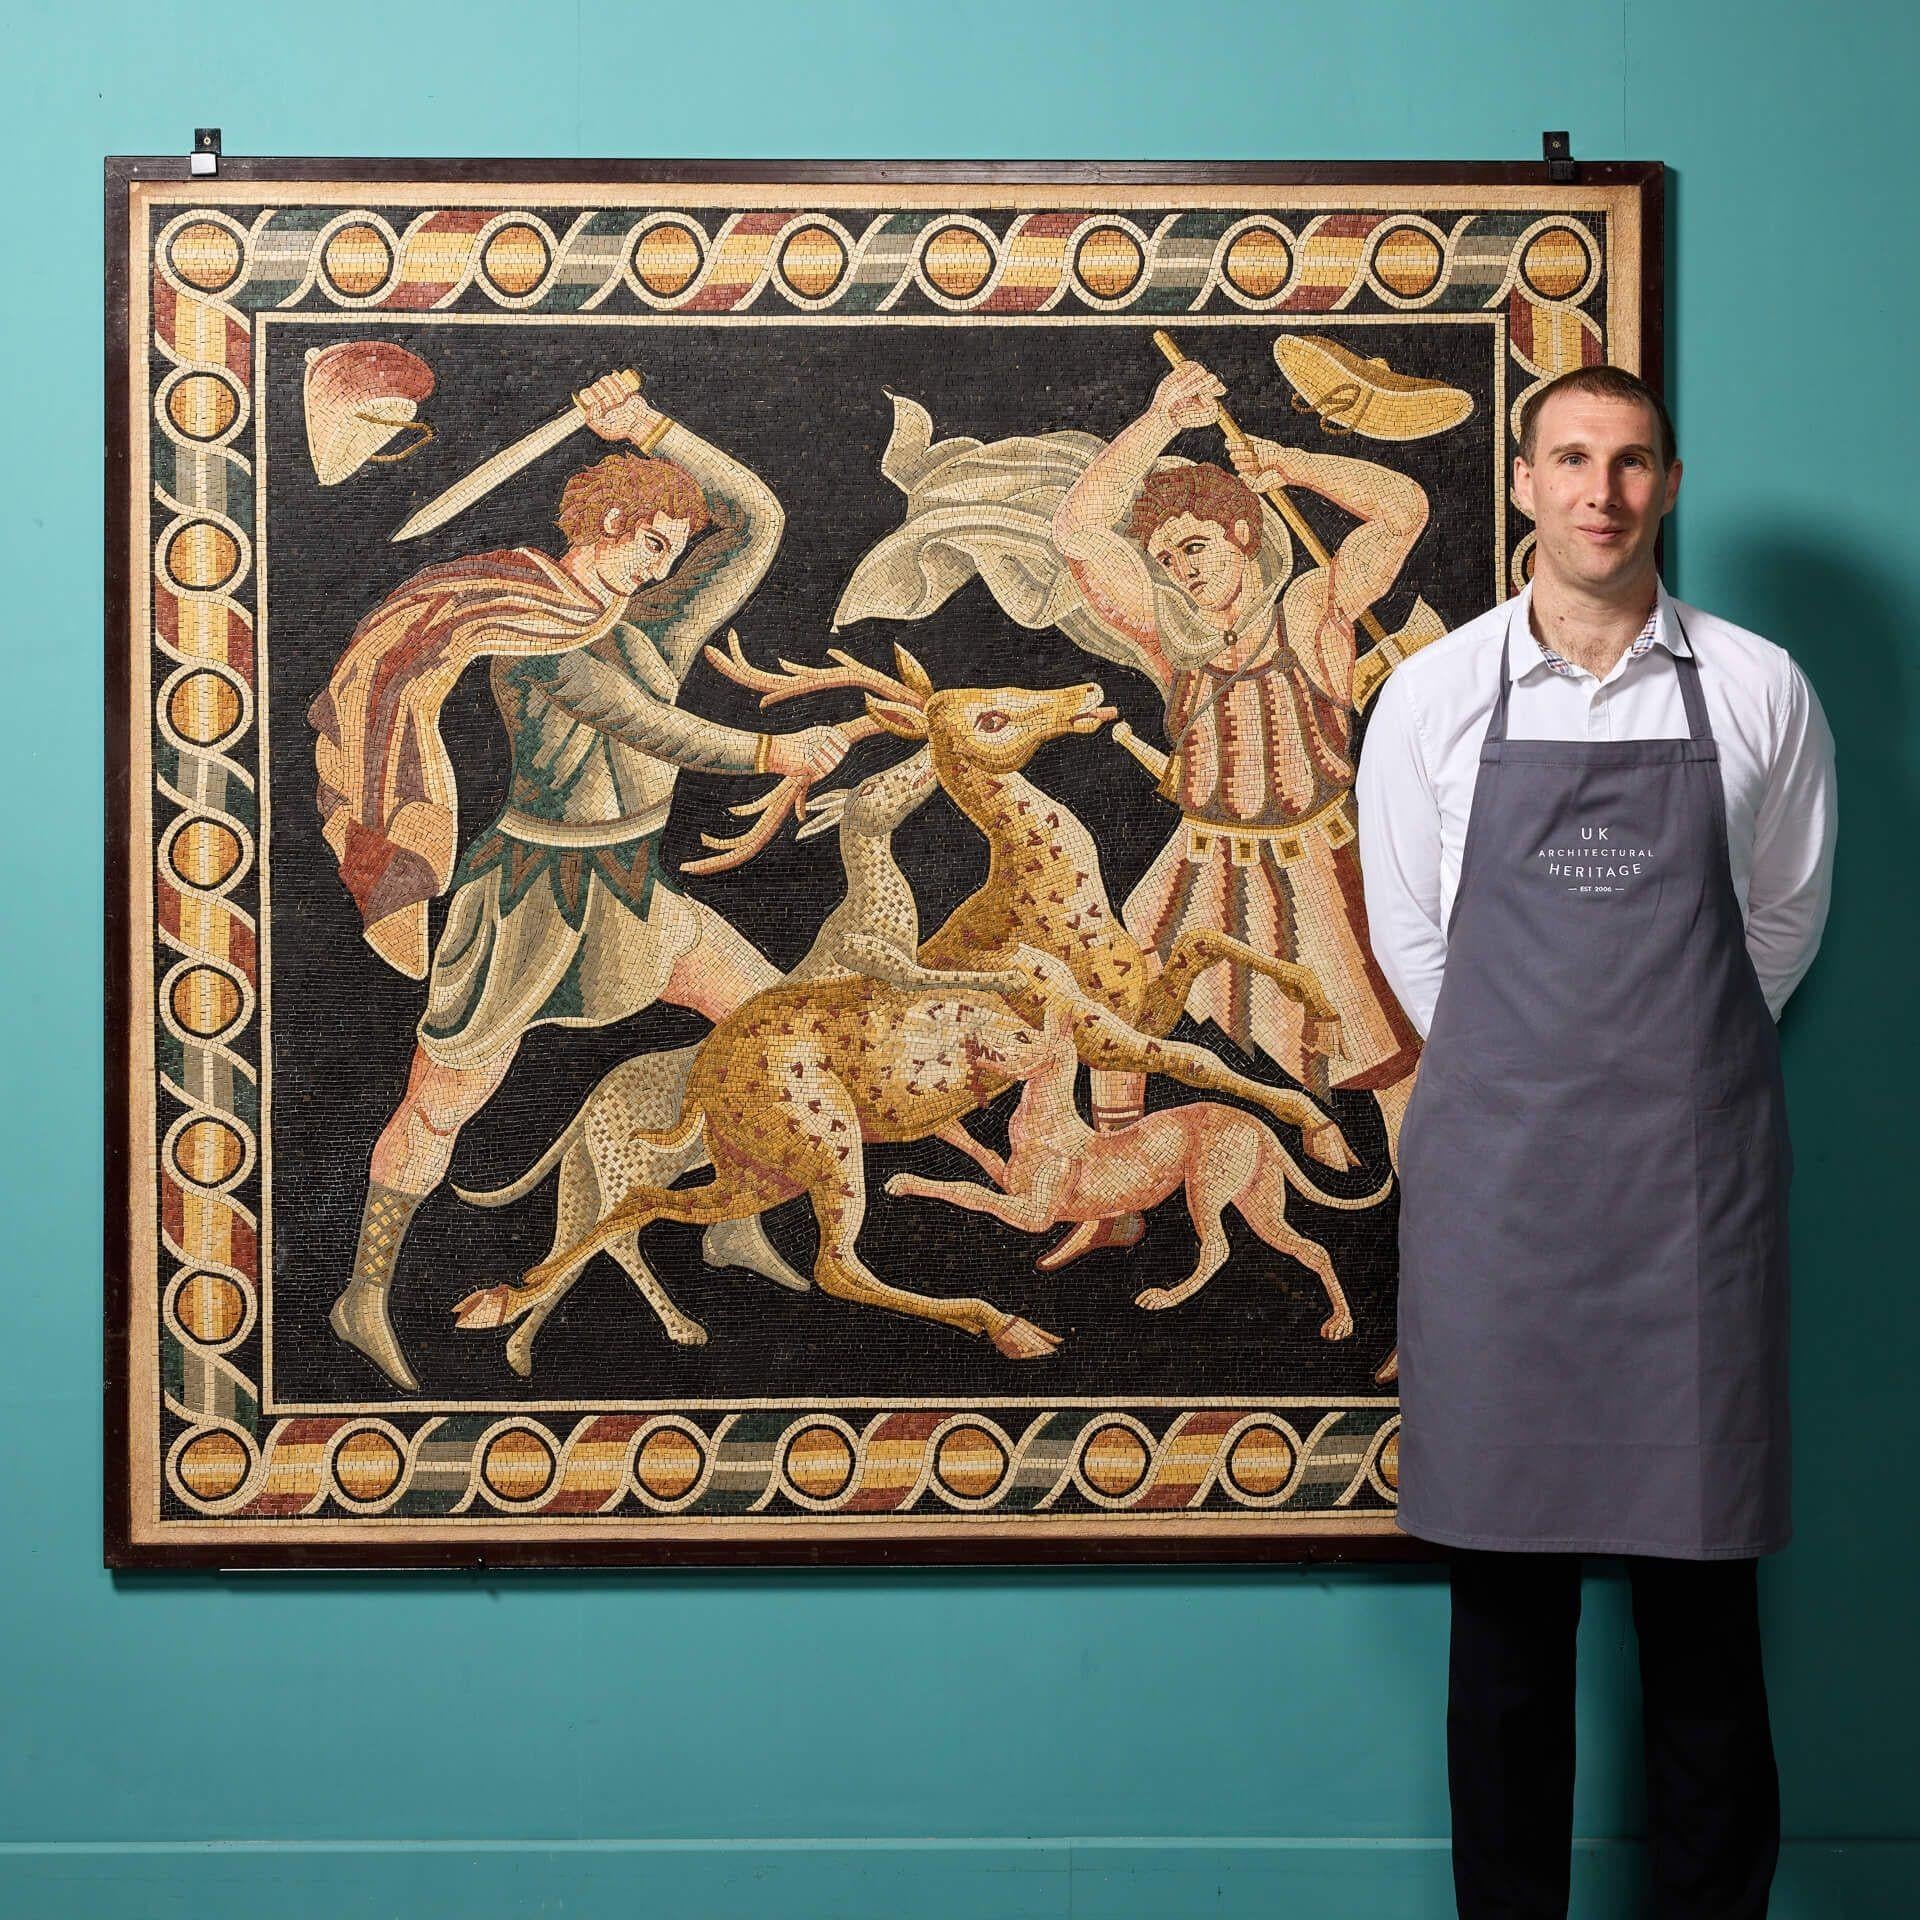 Eine große und aufwendig gefertigte Mosaikwandtafel im griechischen Stil, inspiriert von 